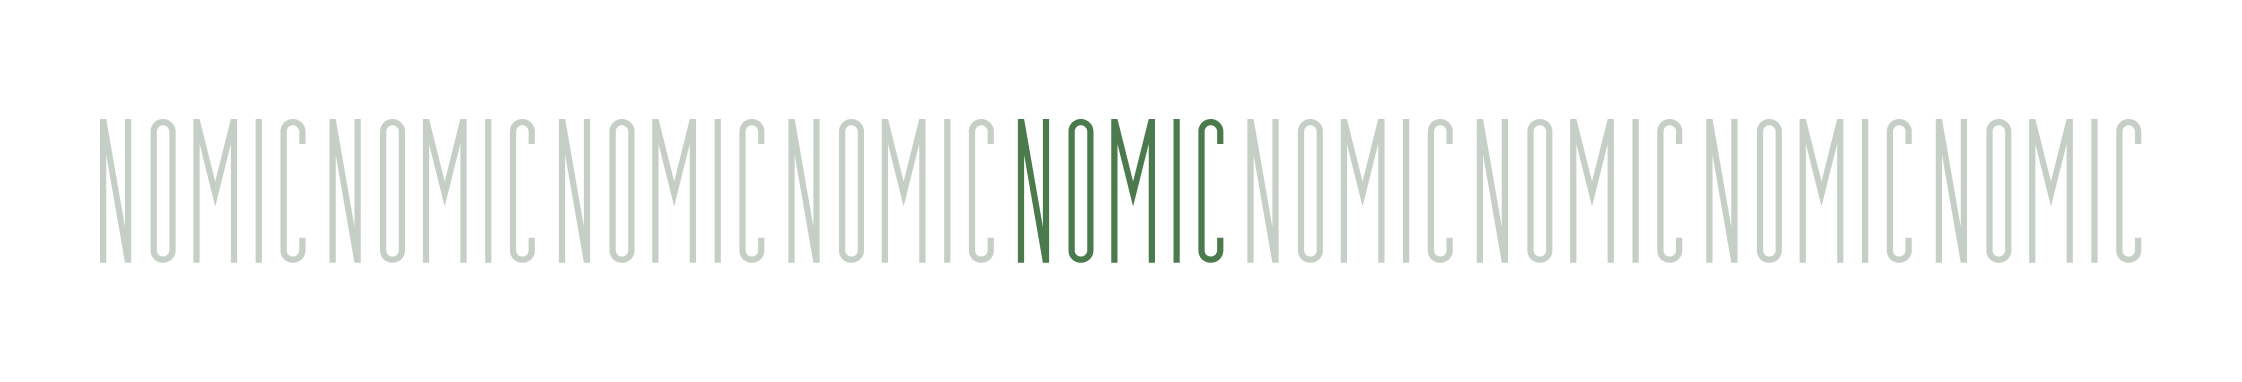 nomic-banner 3.png